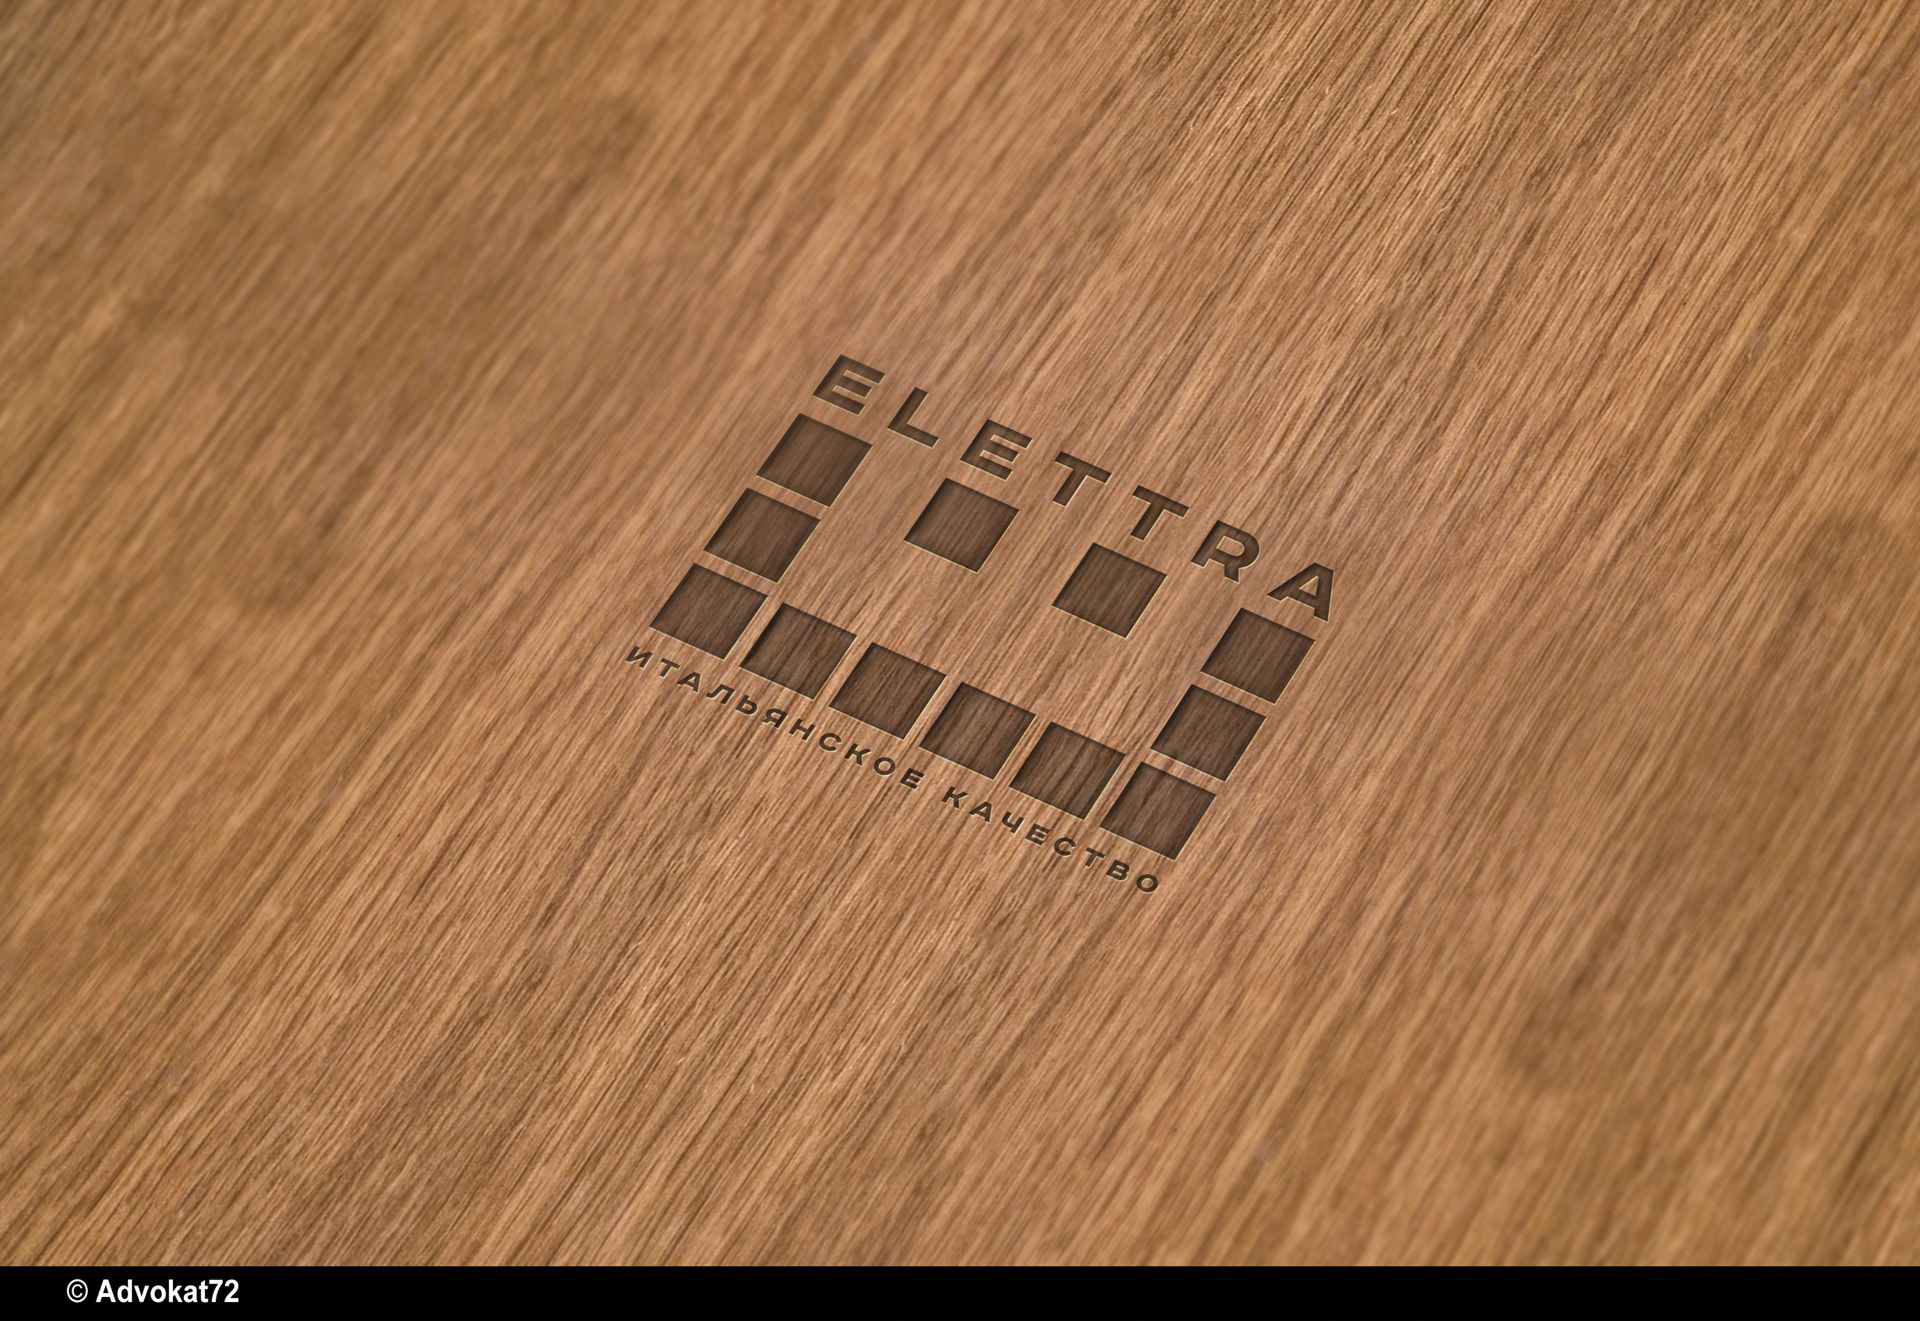 Логотип Elettra - стекольное производство - дизайнер Advokat72